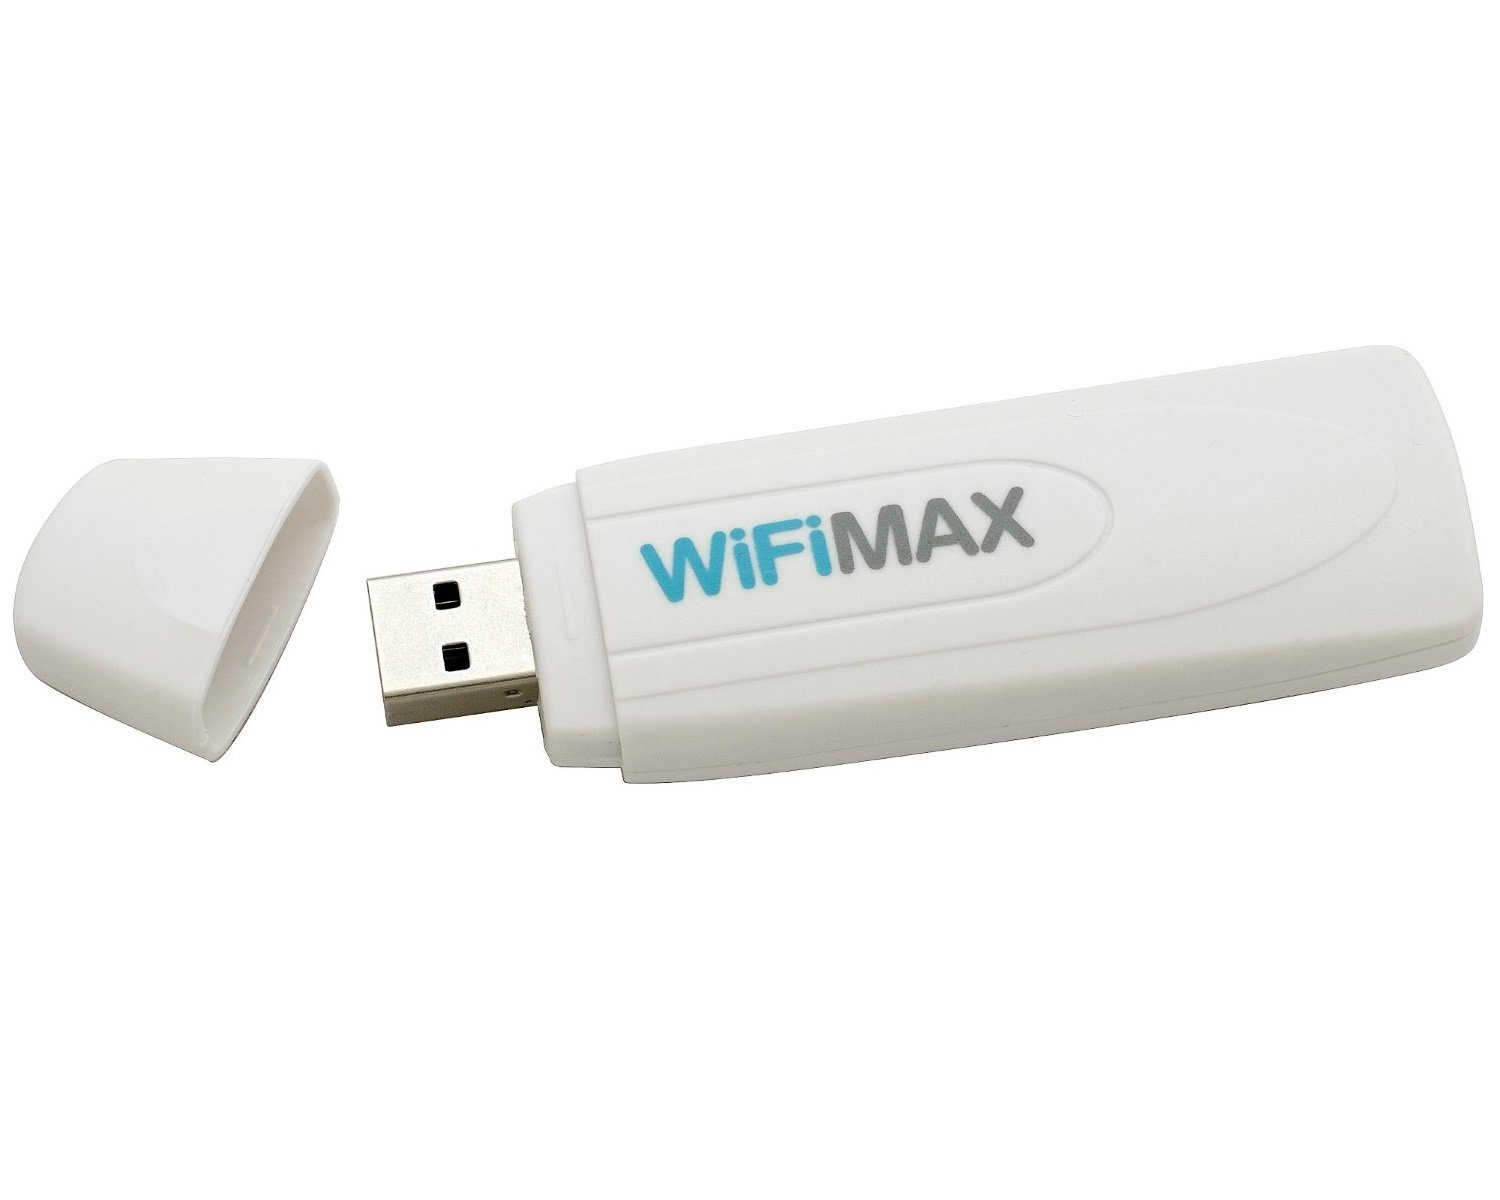 Datel WLAN Stick WIFI Dongle USB 2.0 IEEE802.11n Zubehör Nintendo (Wireless  Adapter macht PC zum Access Point für Konsolen, Geschwindigkeit bis 150  Mbit/s, ideal für Multimedia-Streaming und Online-Spiele)